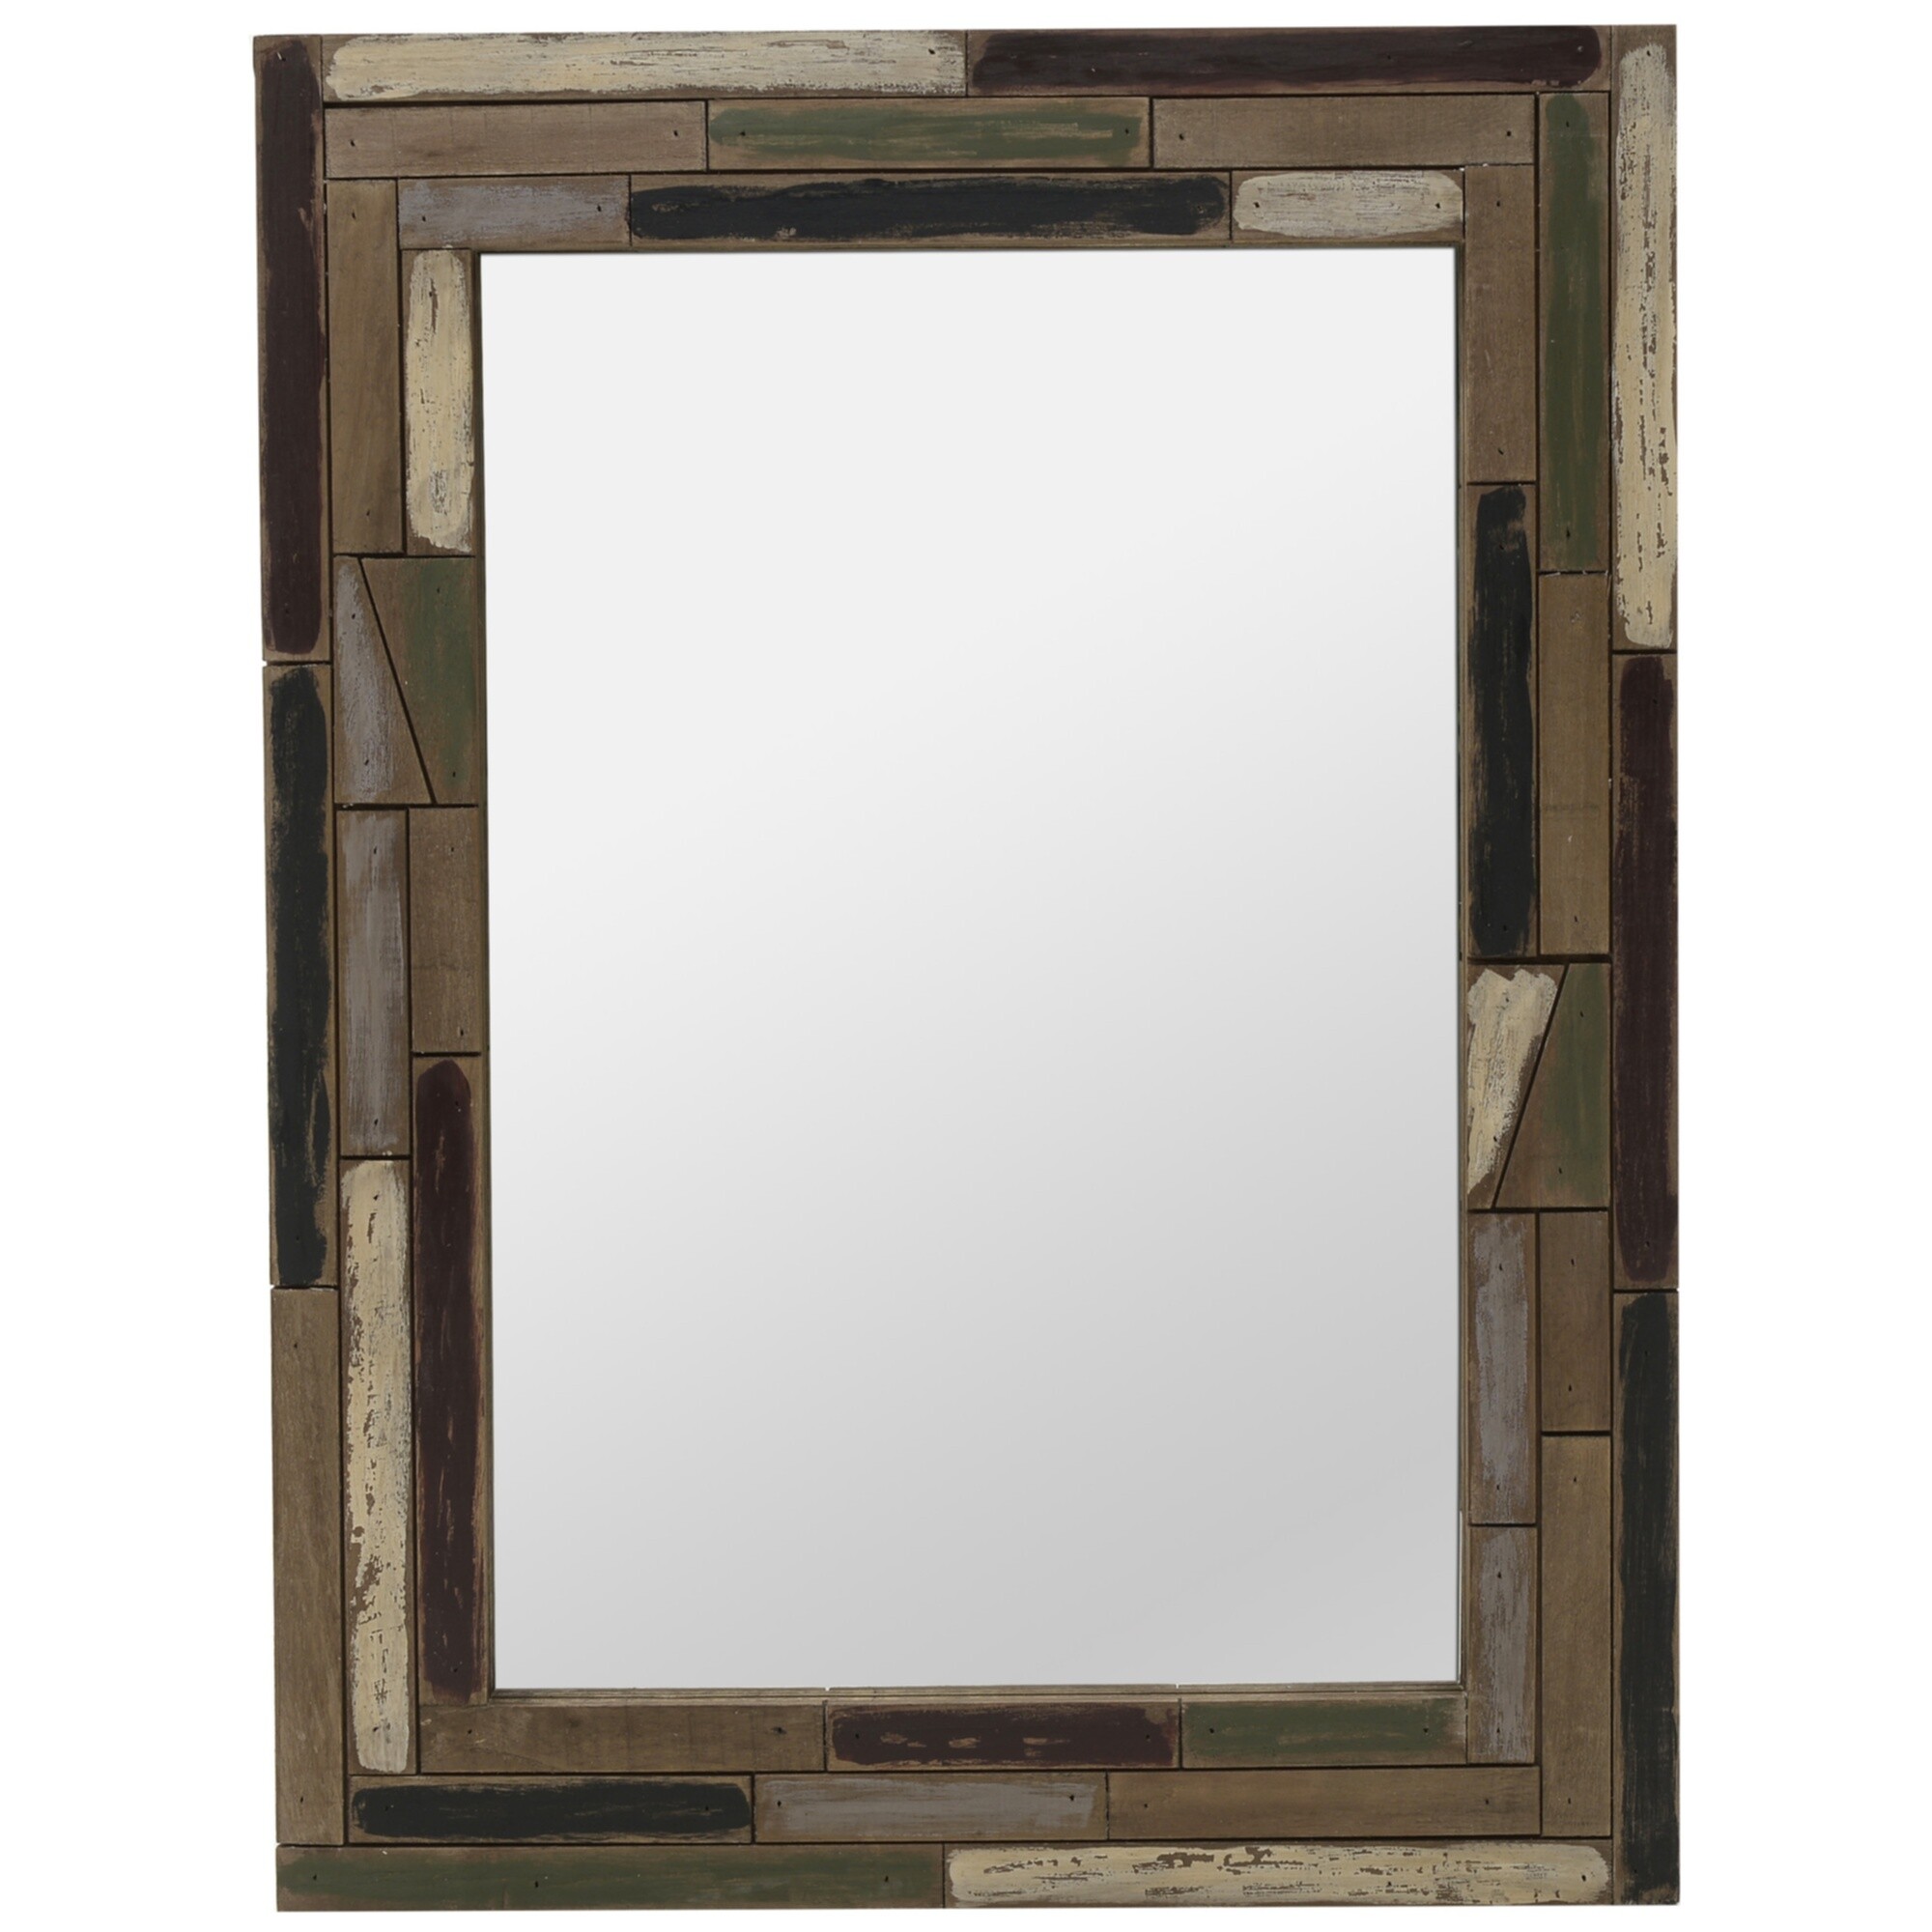 Прямоугольное зеркало настенное 80х60 см коричневое, черное